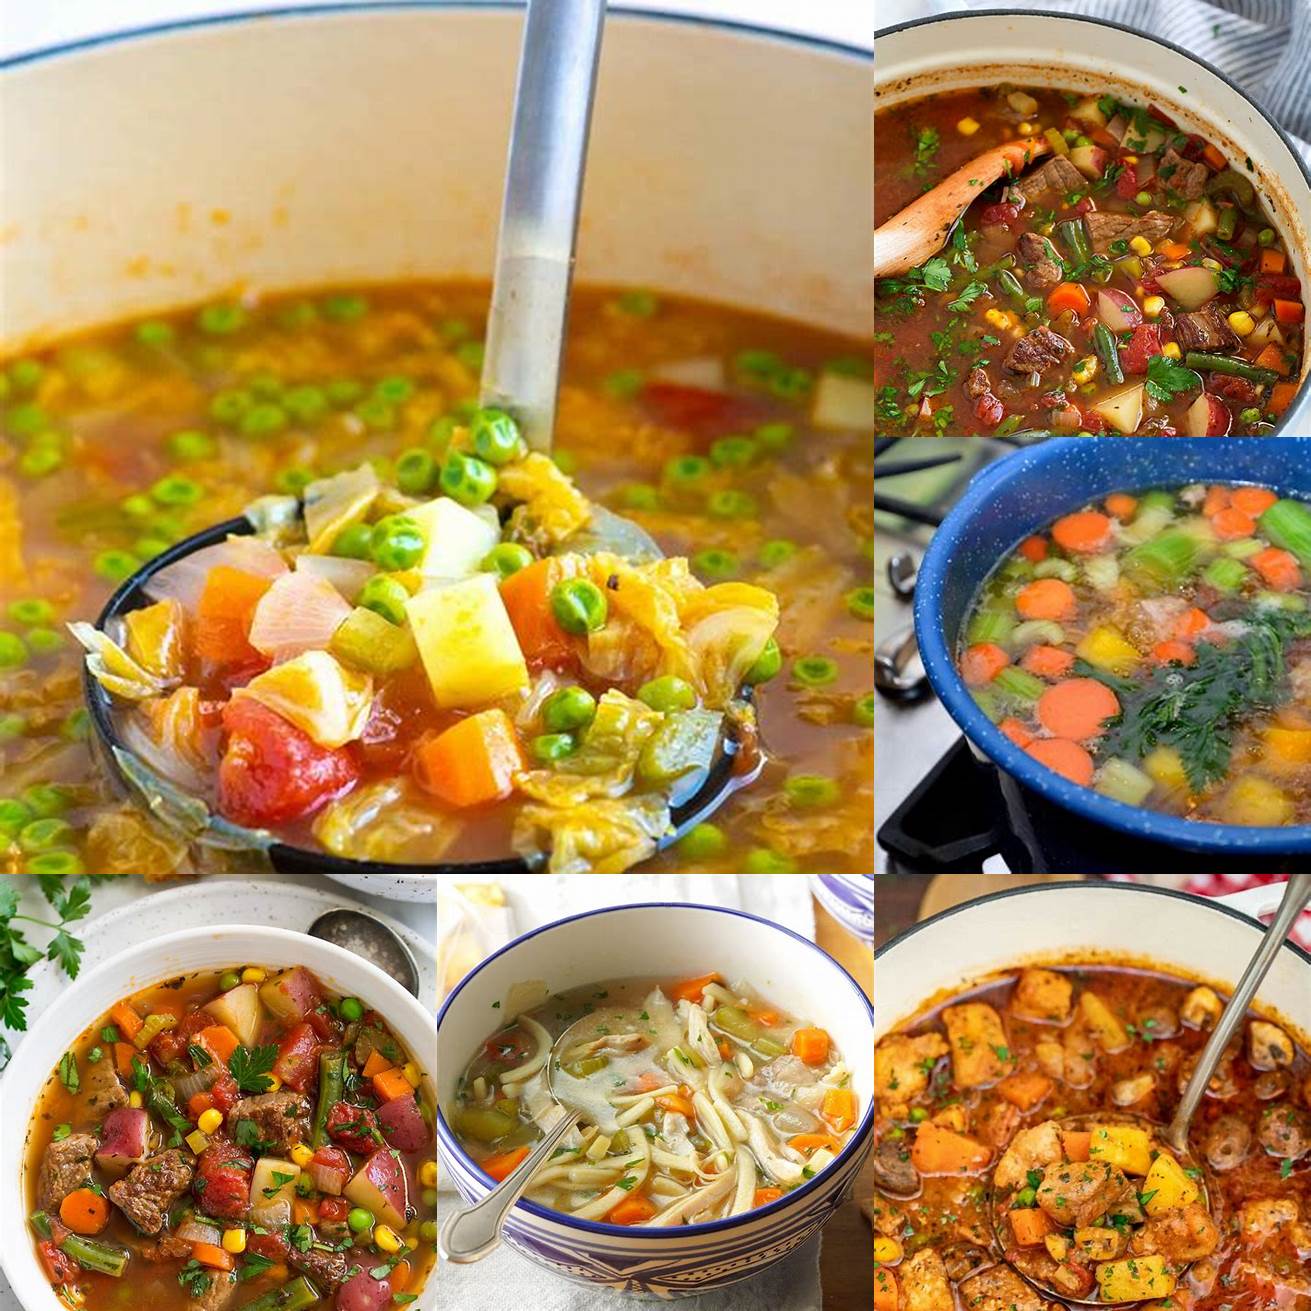 Make a soup or stew